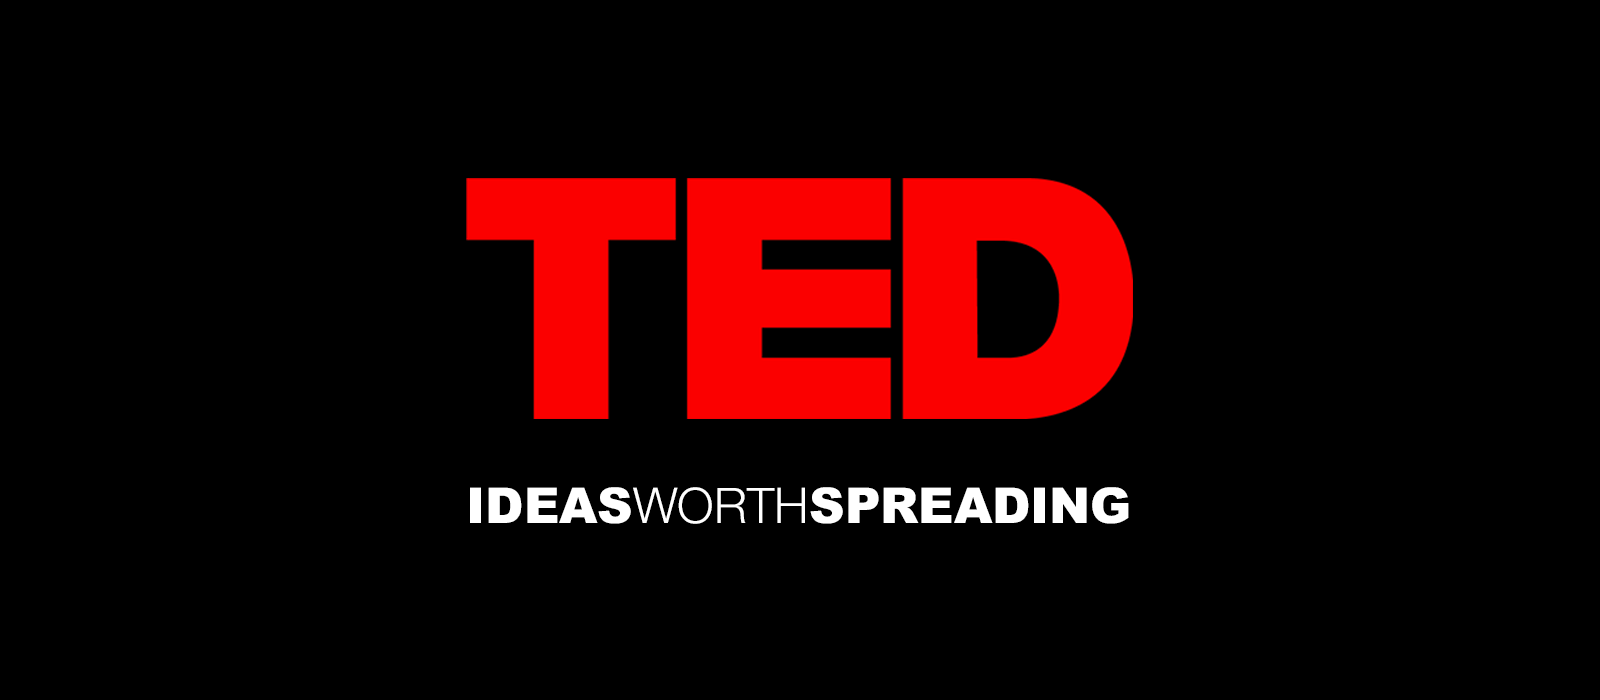 Ted Talks hero image